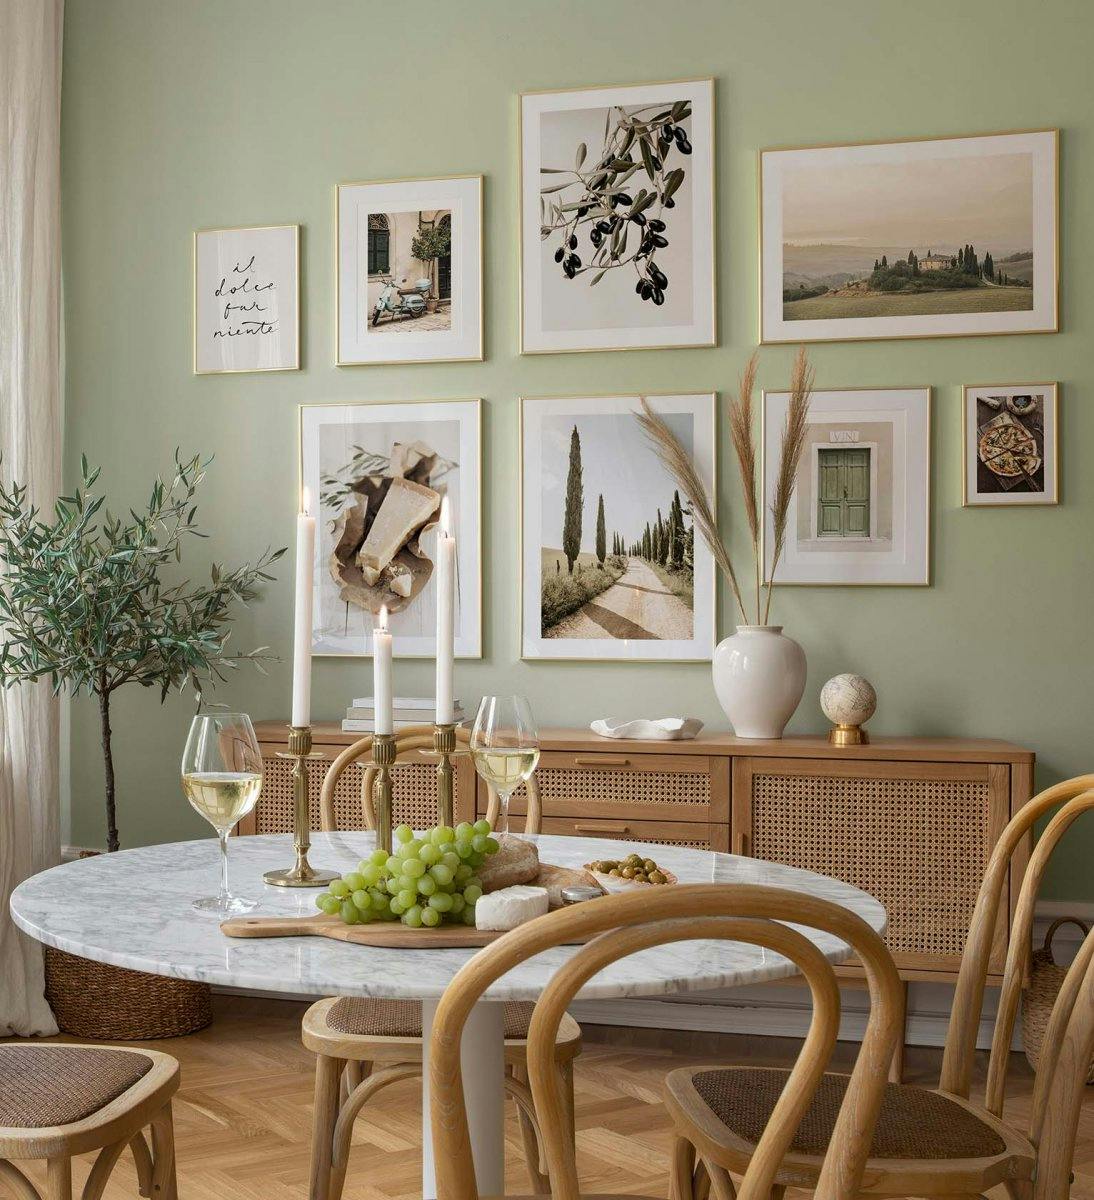 جدار معرض المناظر الطبيعية الخضراء مع إطارات ذهبية لغرفة الطعام